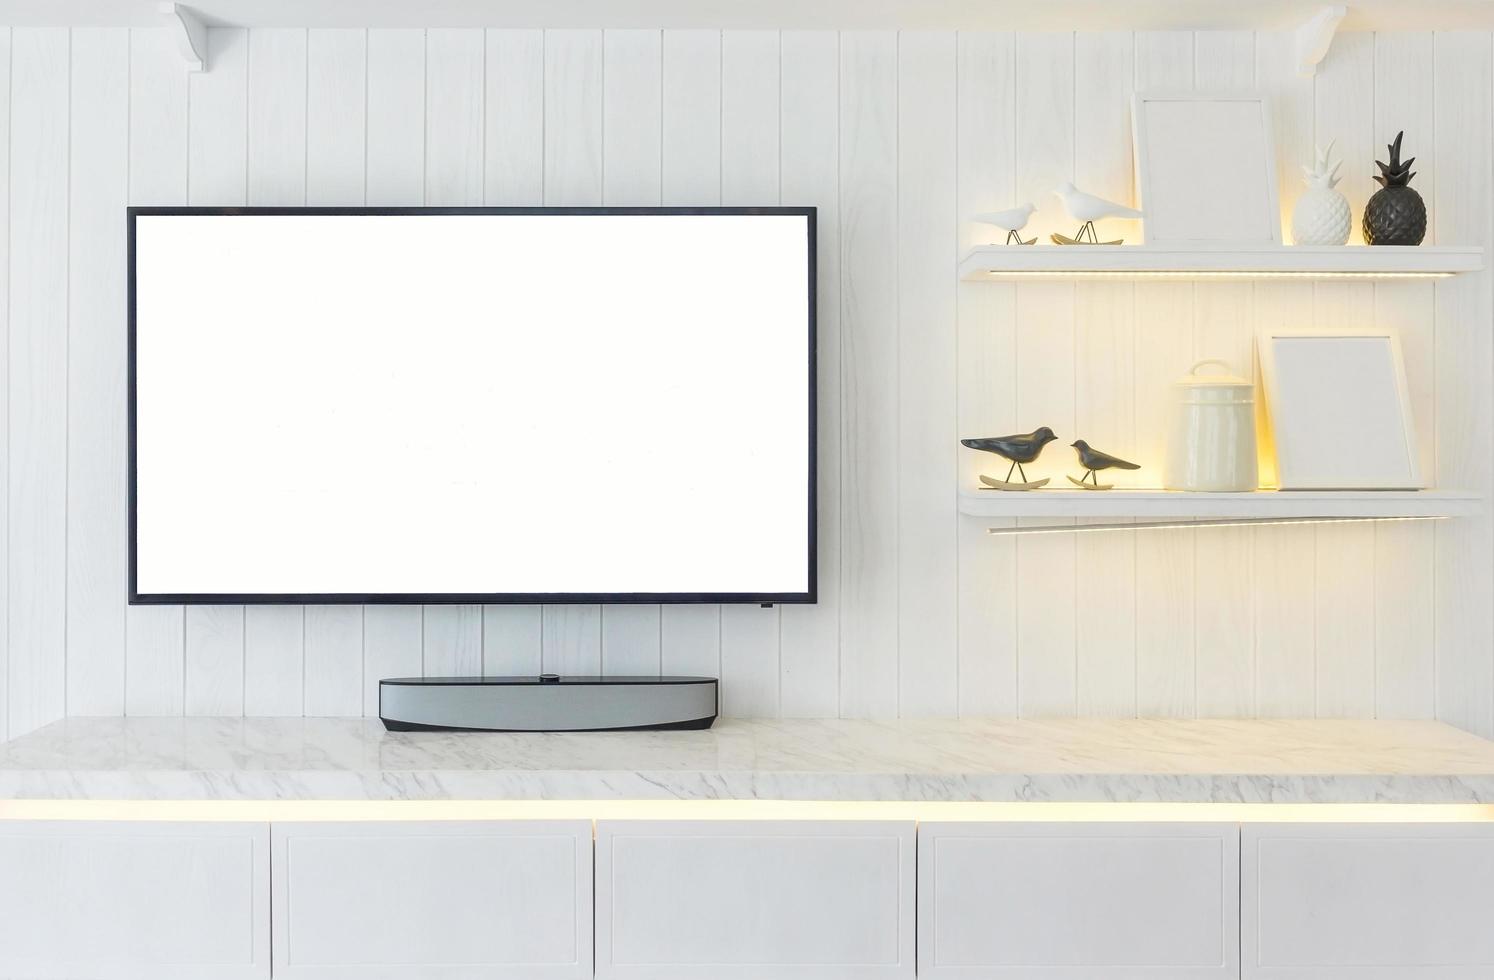 Mueble de tv interior diseño de habitación moderna y estilo de vida acogedor, aparador de madera en la pared blanca foto